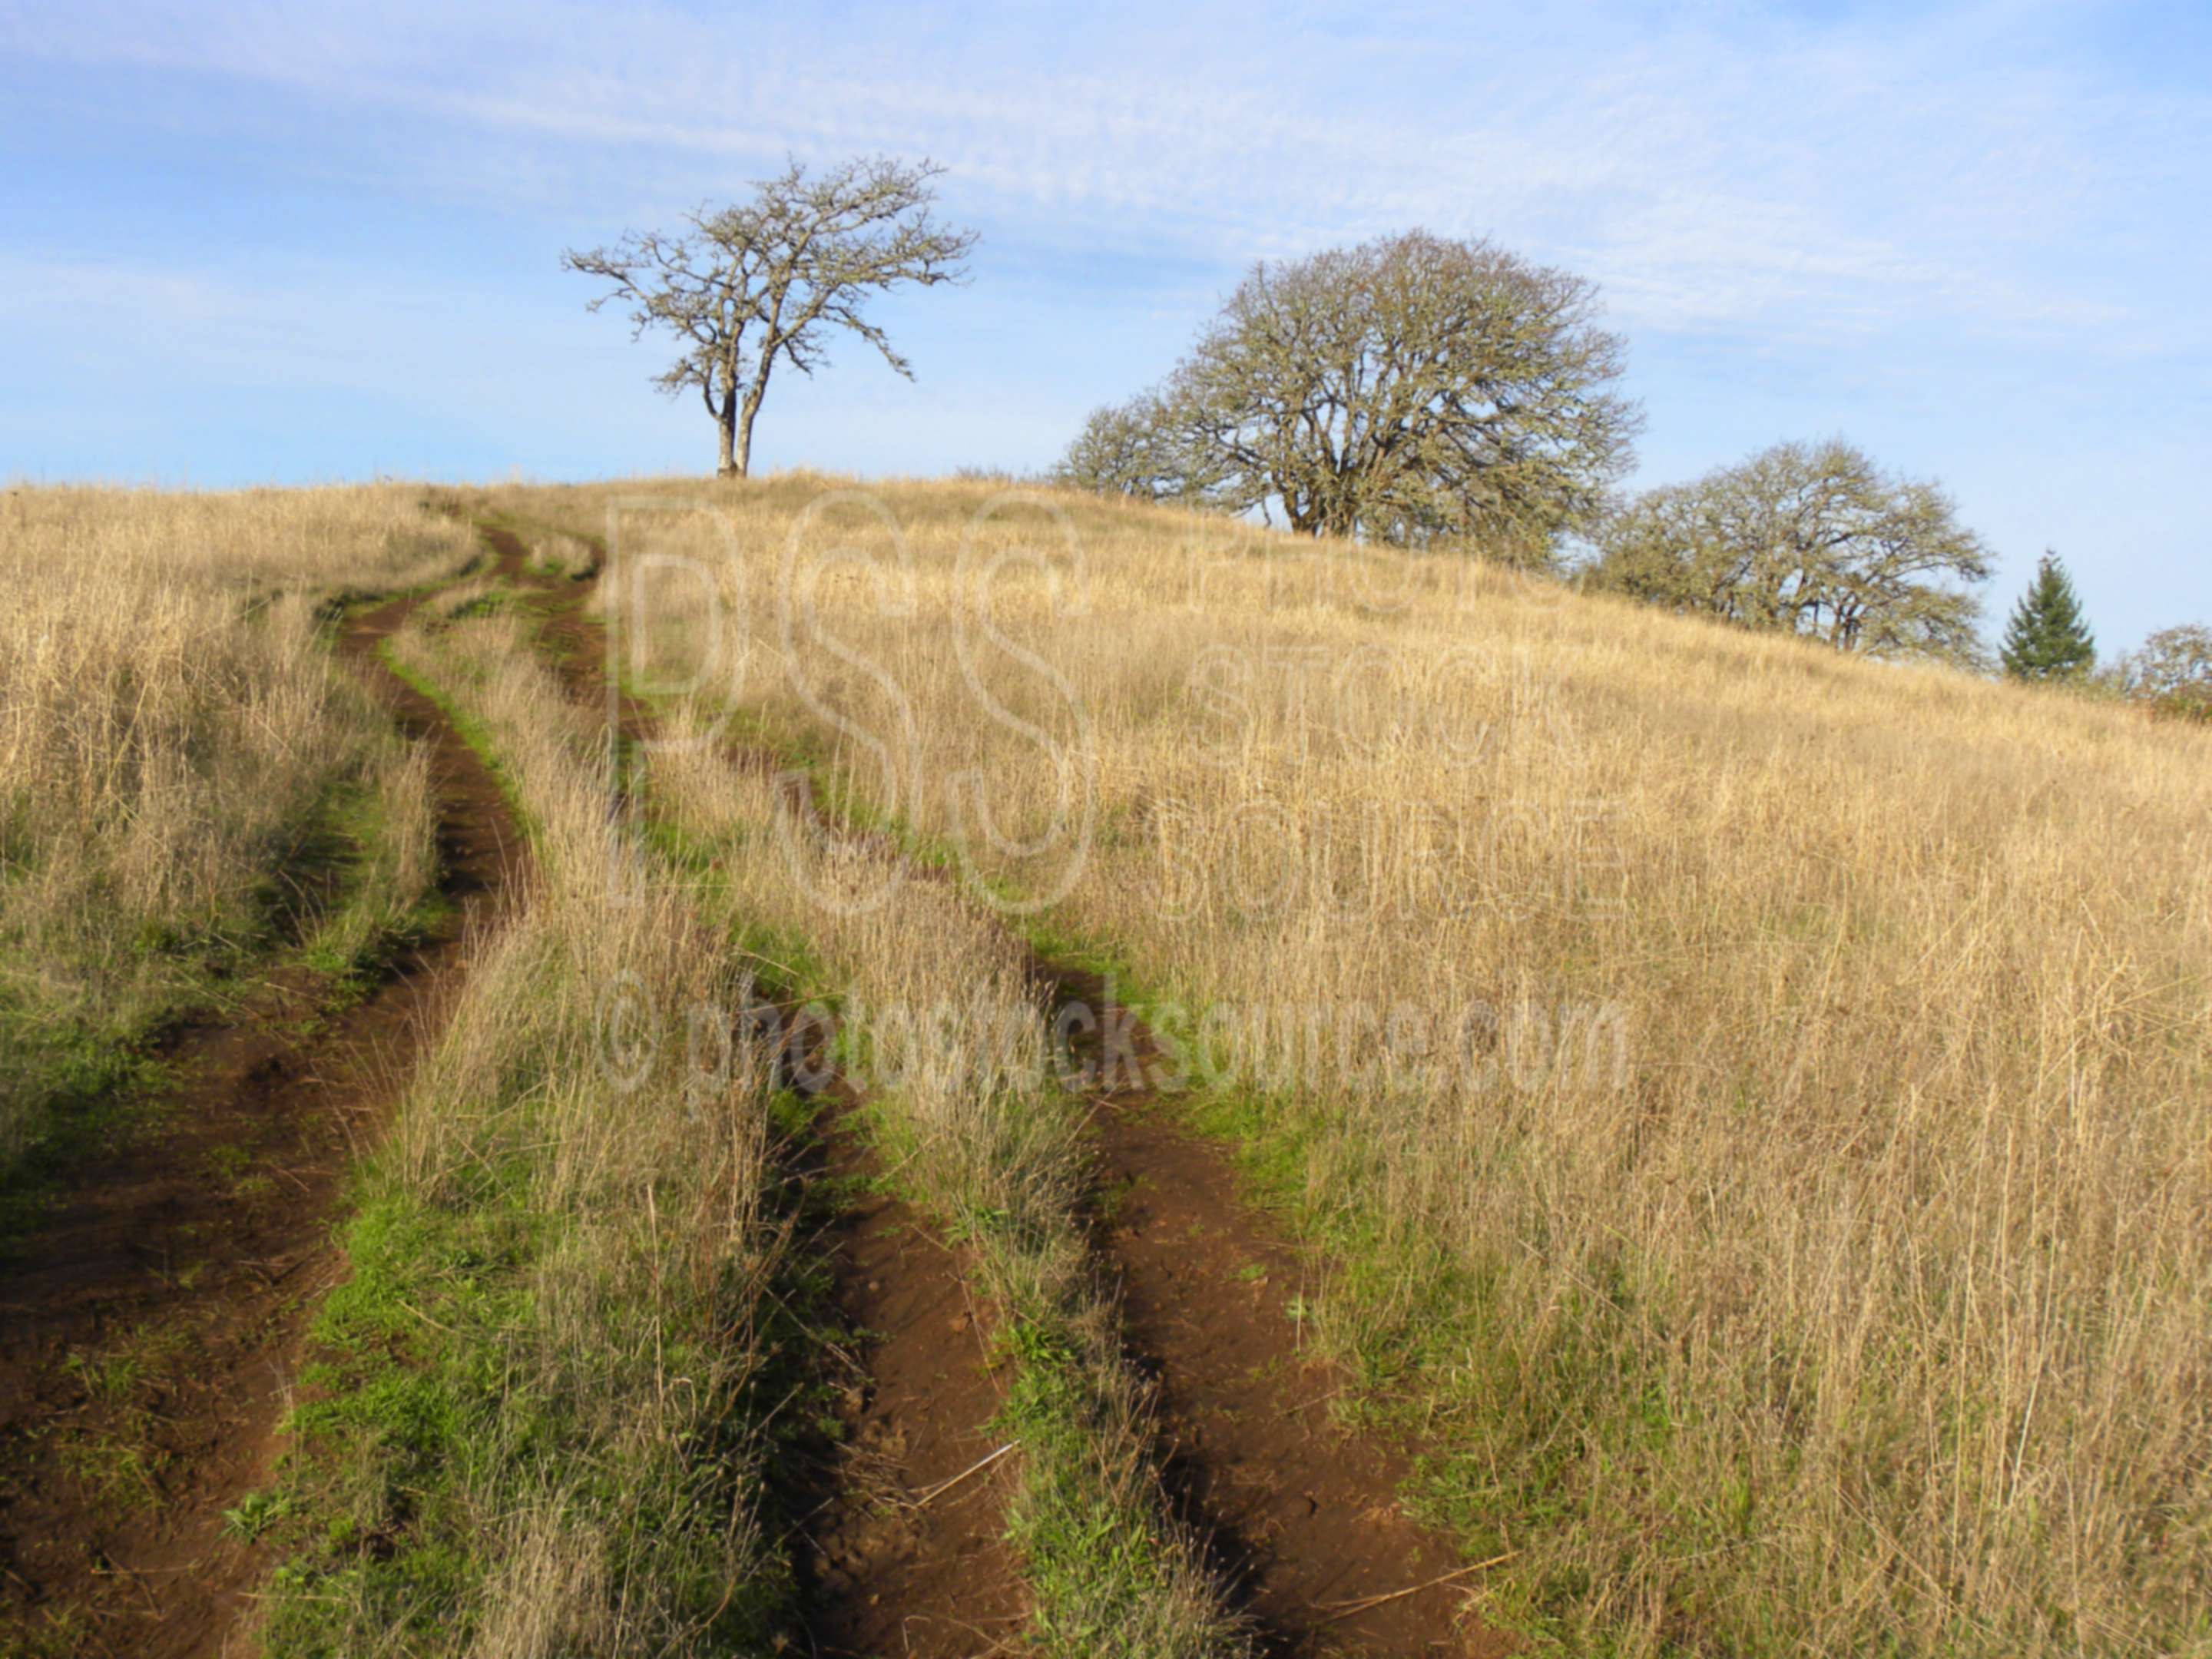 Mt. Pisgah Afternoon Grass,grass,golden,afternoon,sunset,road,oak,trail,quercus garryana,garry oak